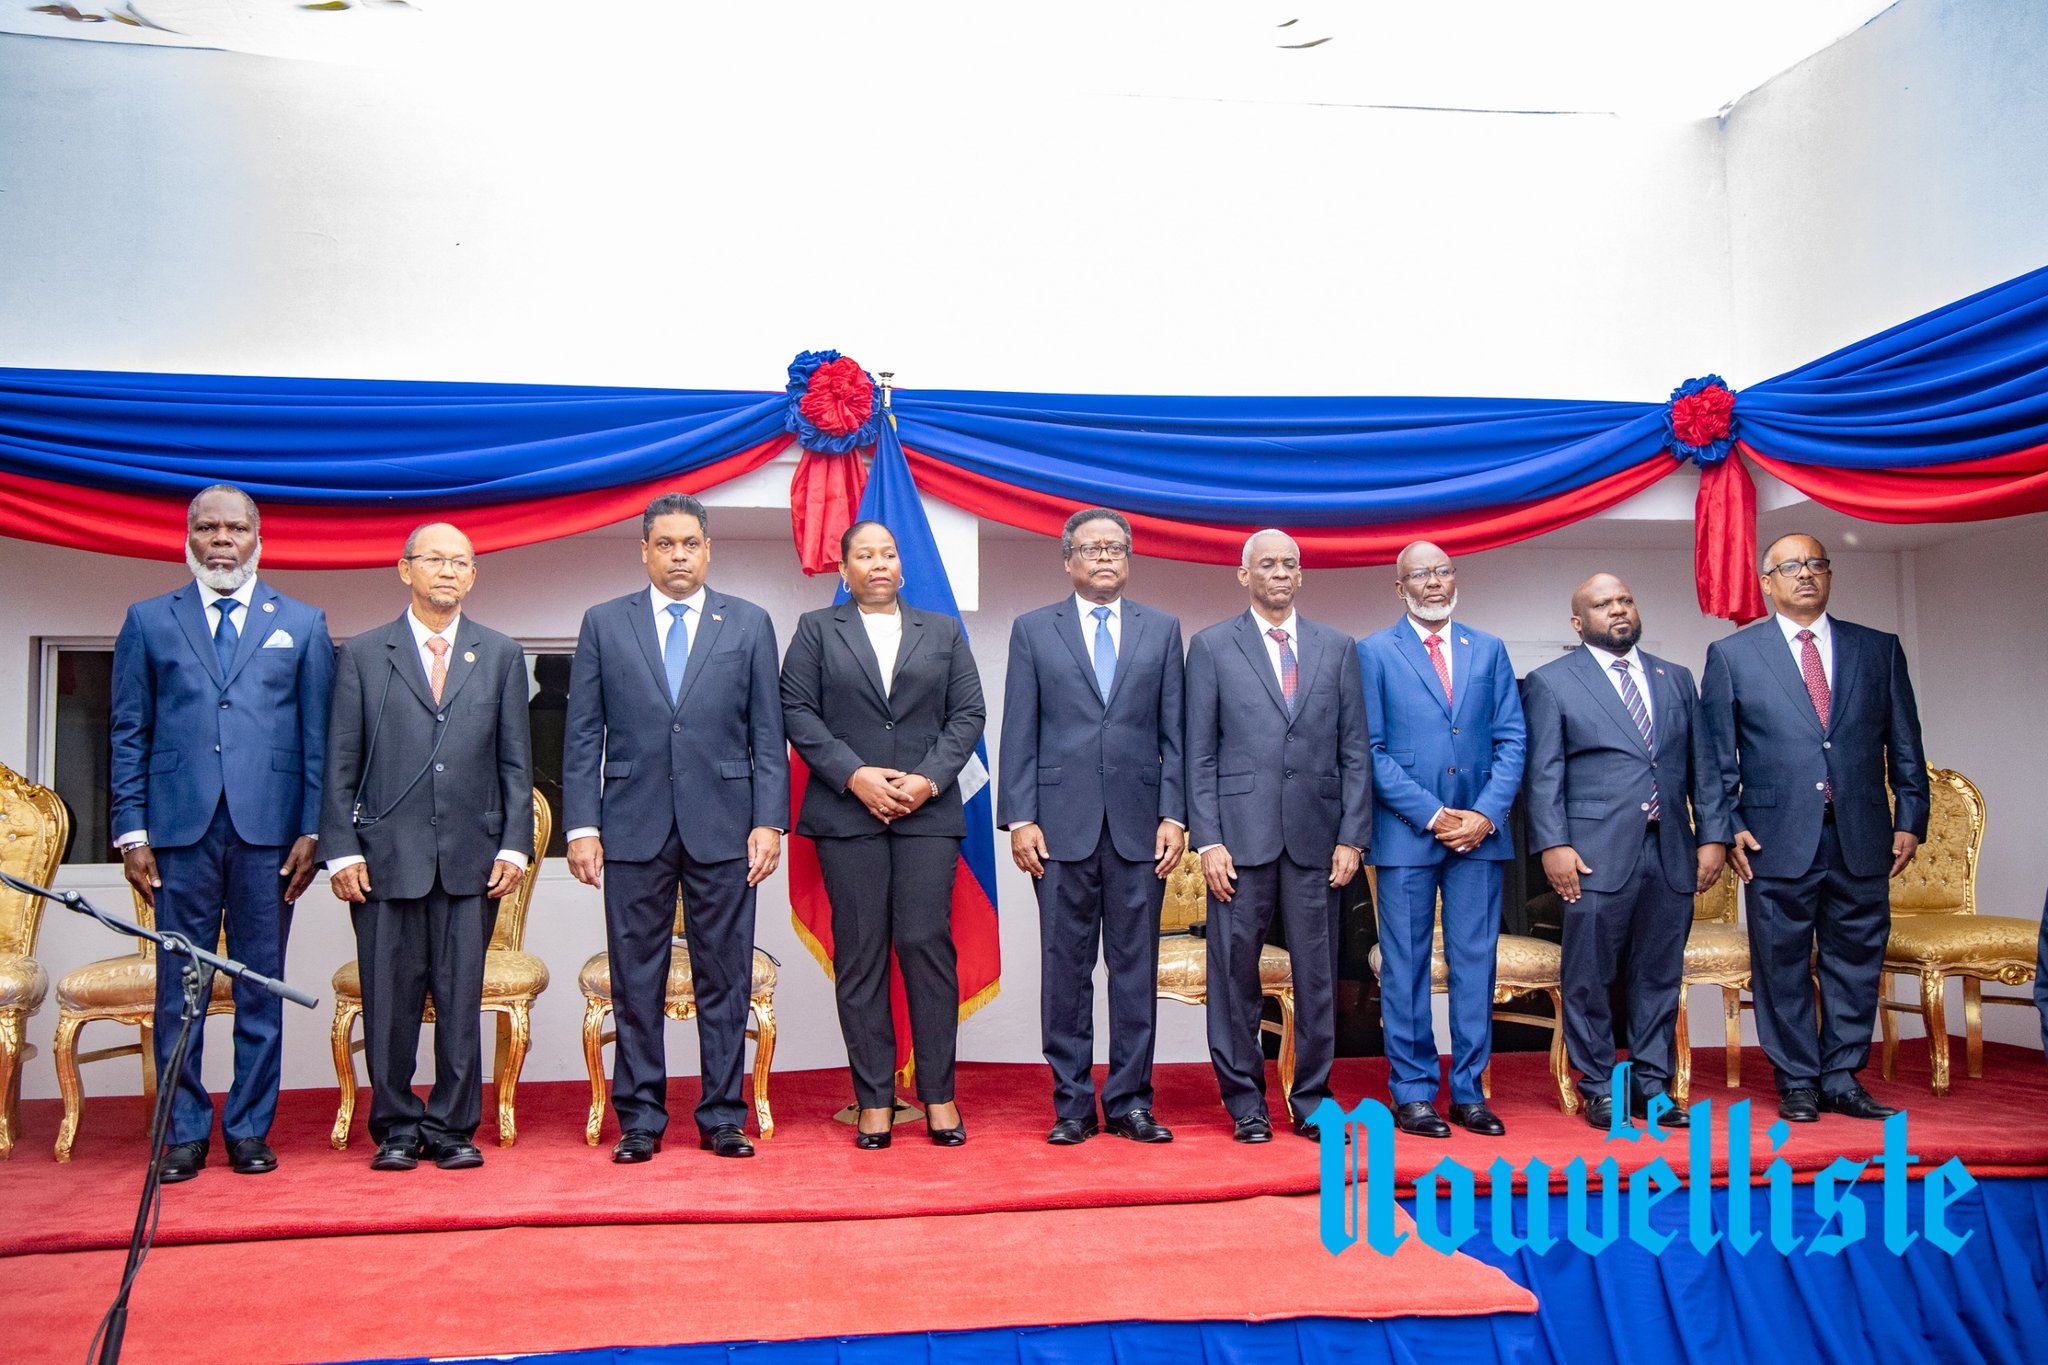 Le 9 membres du Conseil présidentiel de transition. Photo : Le Nouvelliste